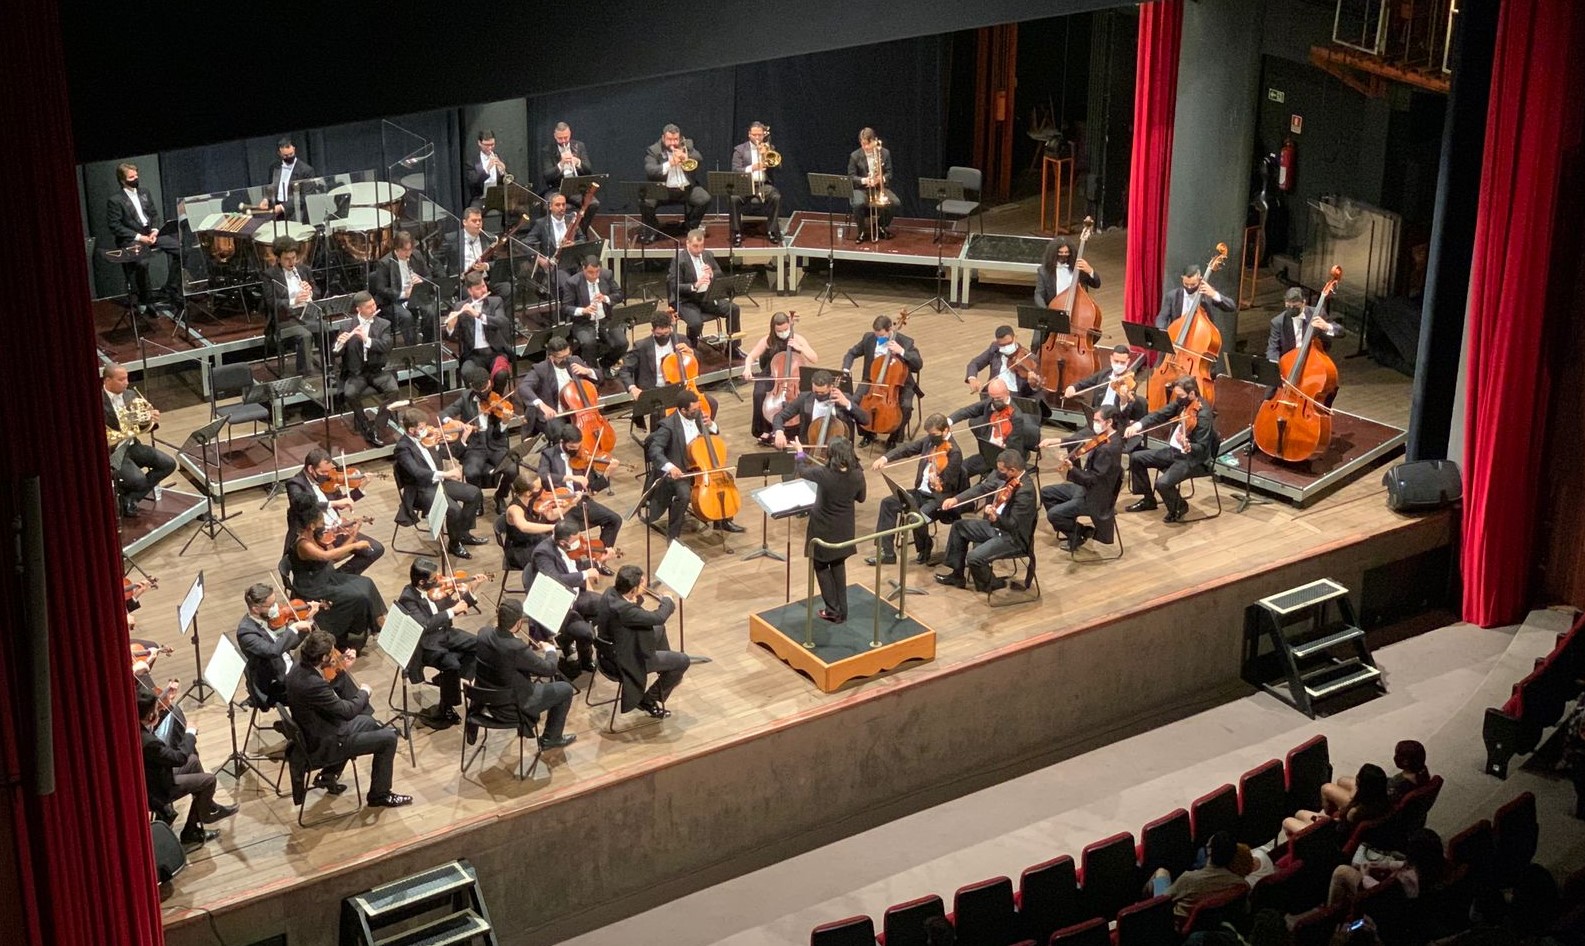 álbum da Orquestra Filarmônica de Goiás foi lançado nesta semana